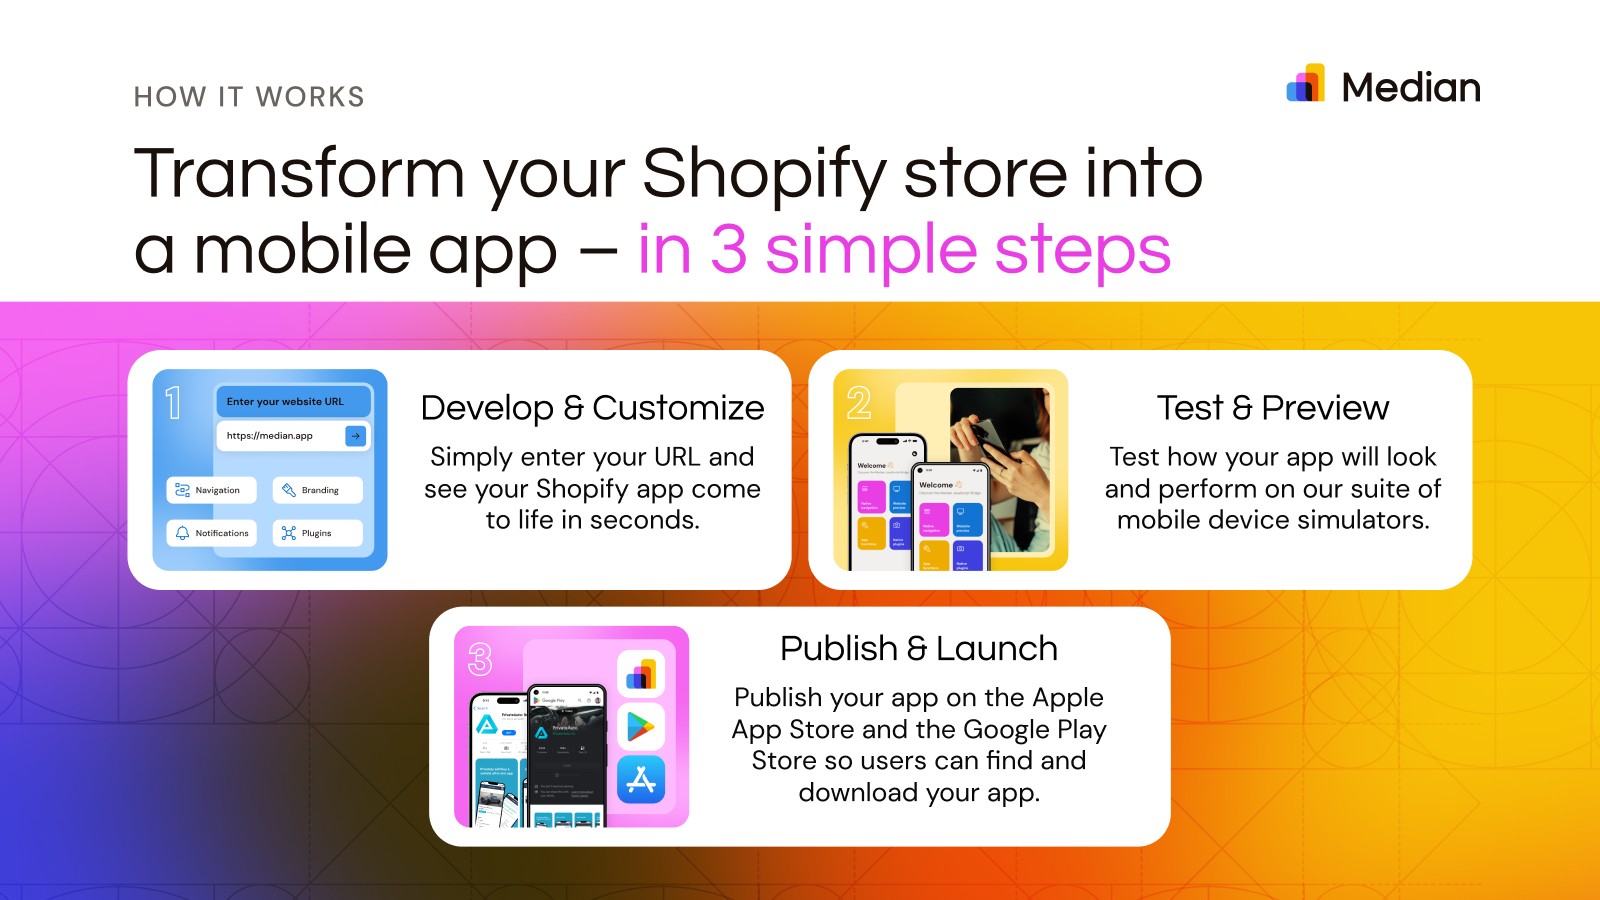 Transforma tu tienda Shopify en una aplicación móvil en 3 simples pasos